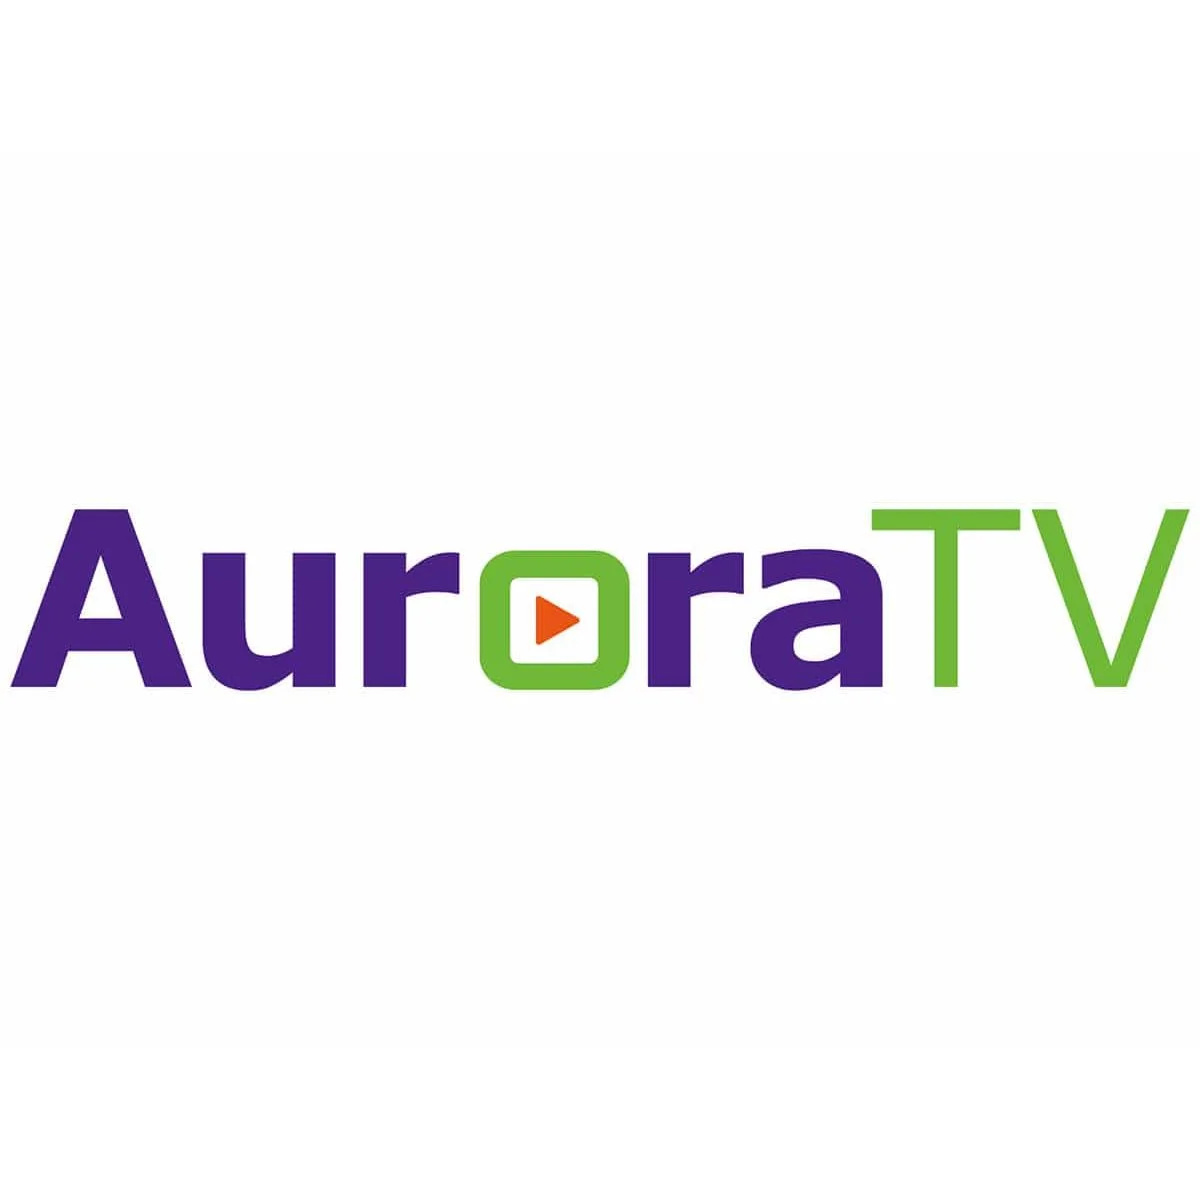 AuroraTV